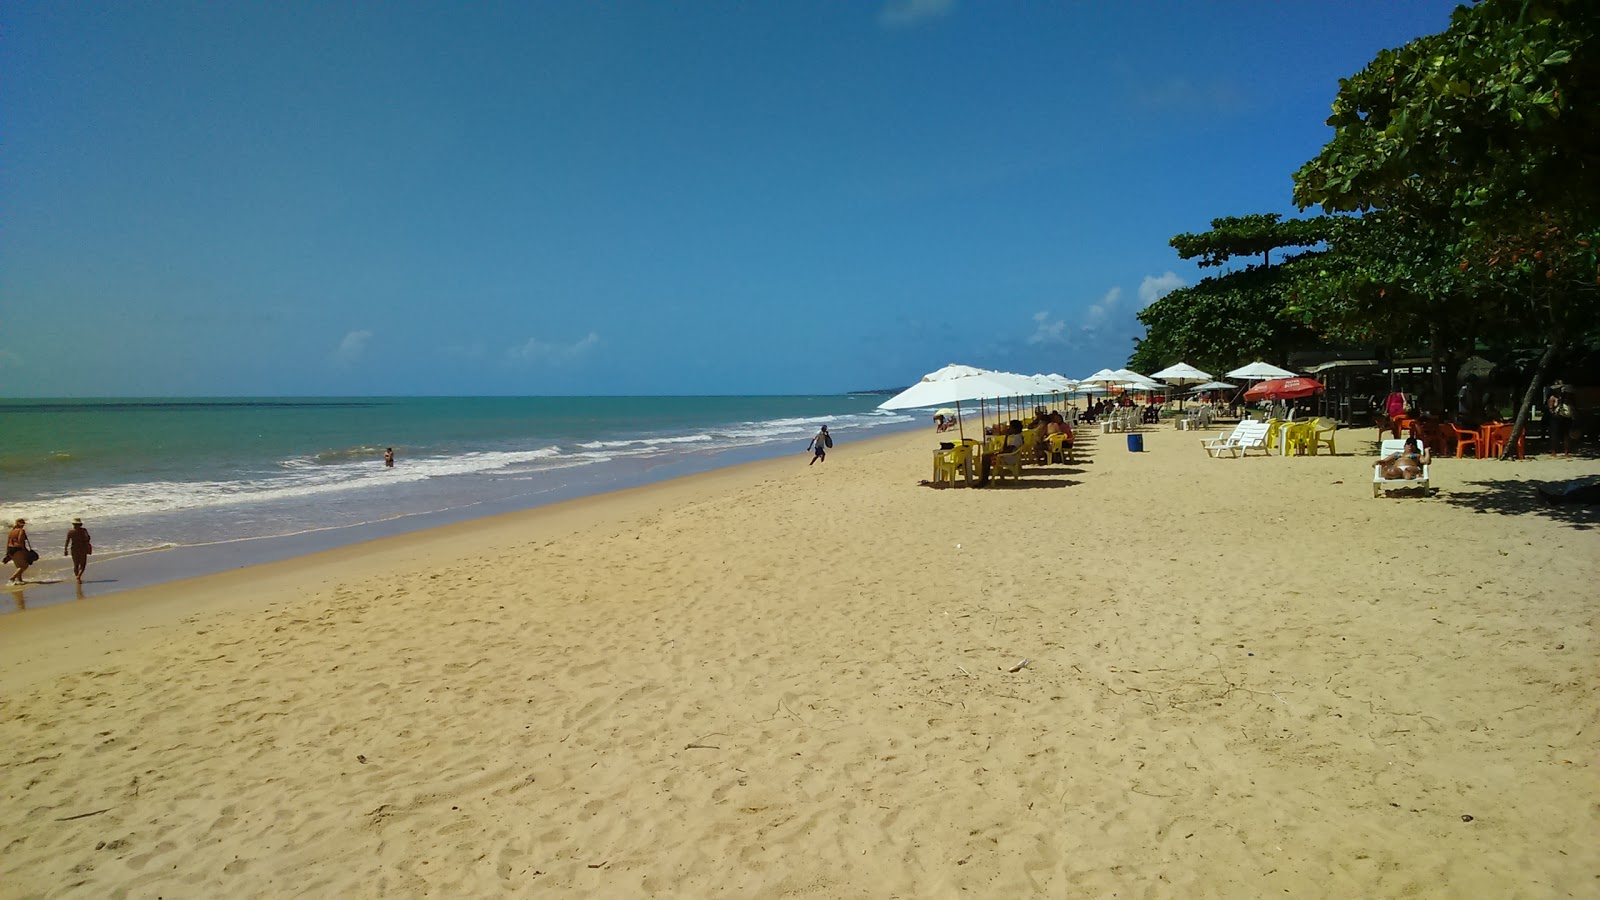 Foto von Praia Do Mundai - beliebter Ort unter Entspannungskennern